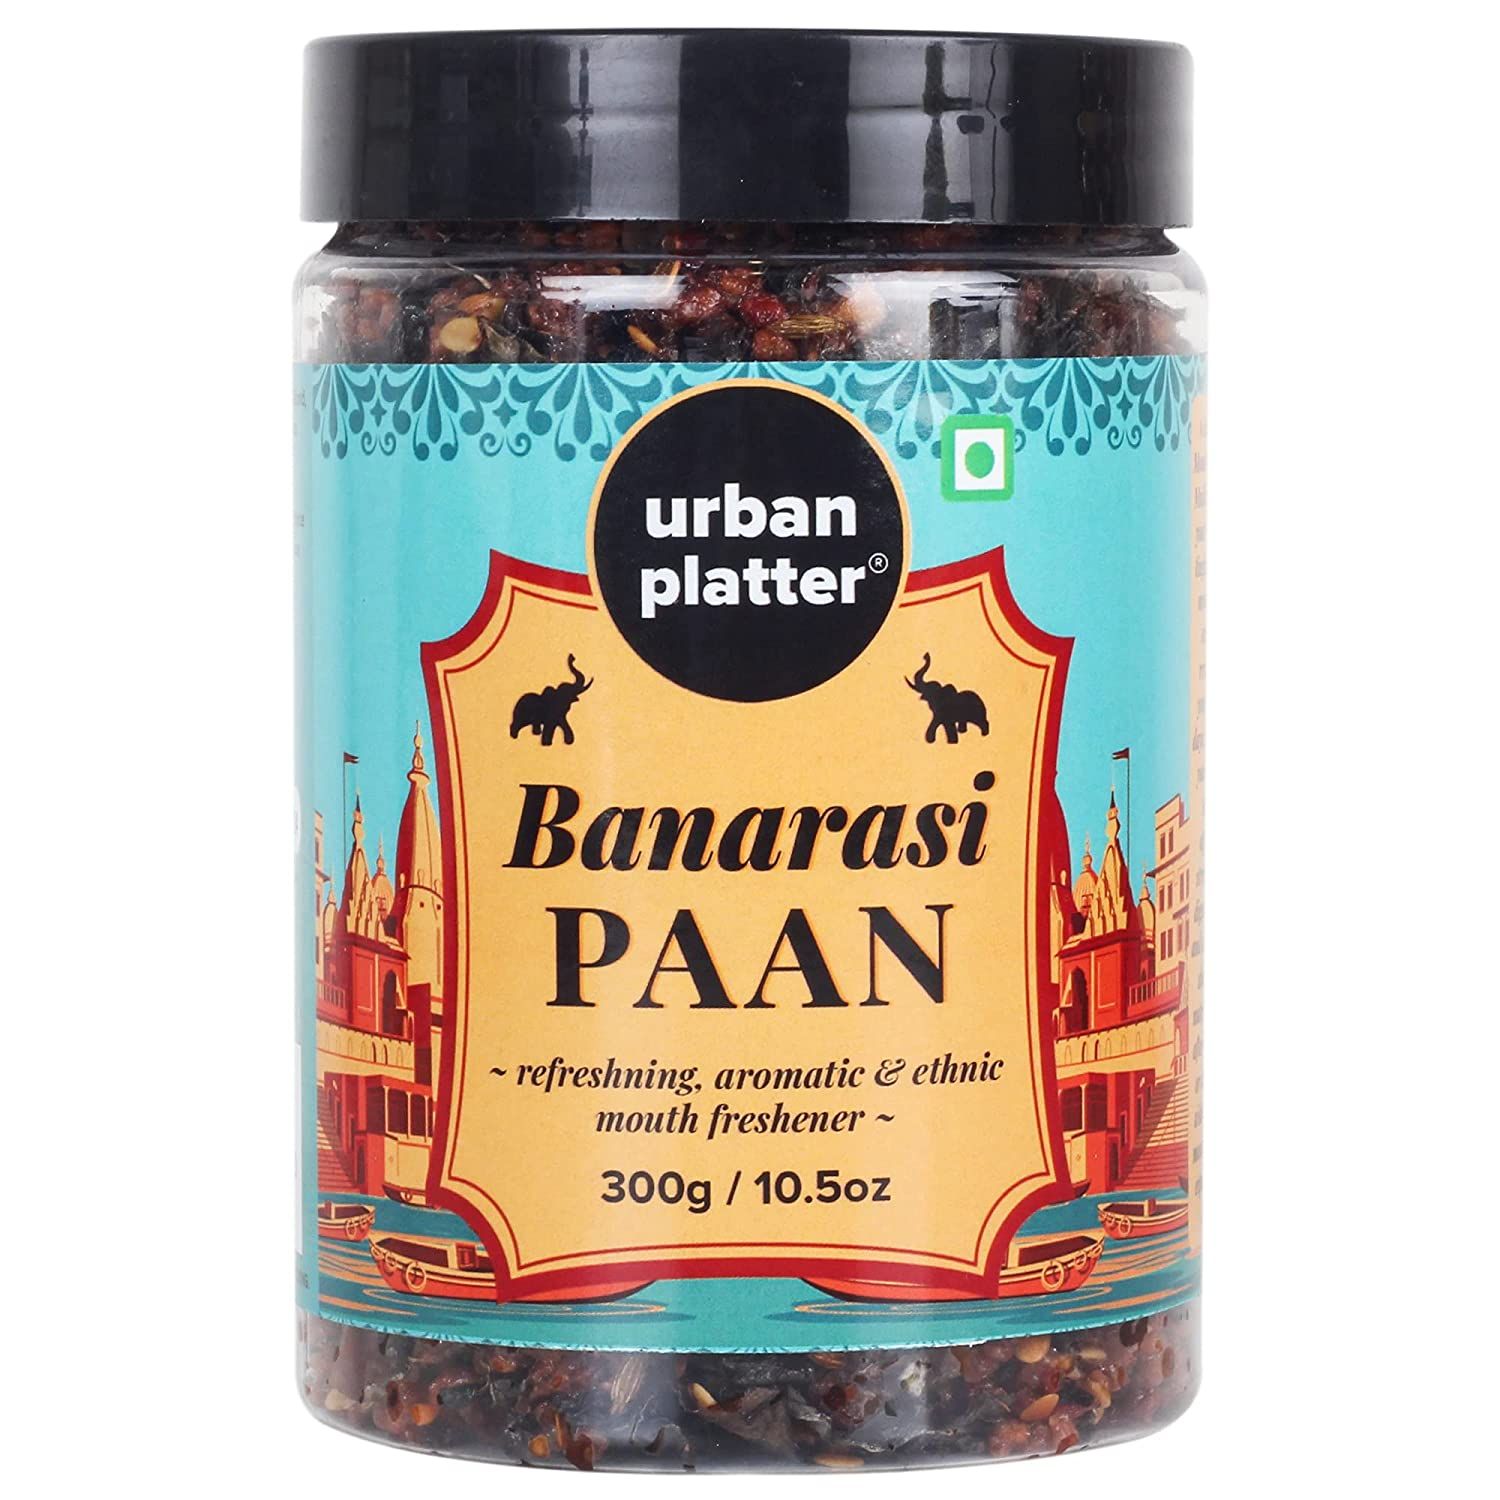 Urban Platter Banarasi Paan Image